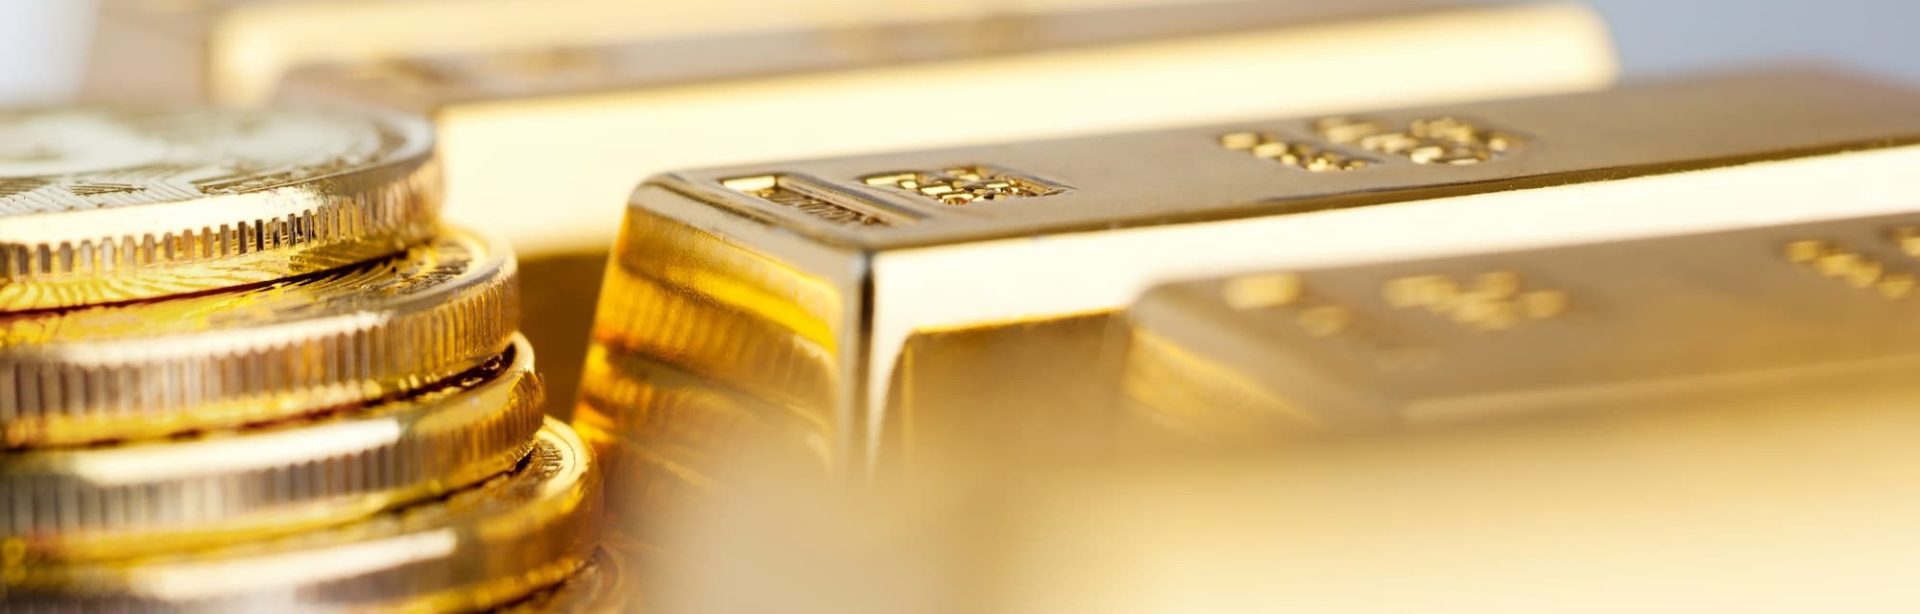 Lingot d'or : comment distinguer les vrais des faux ?